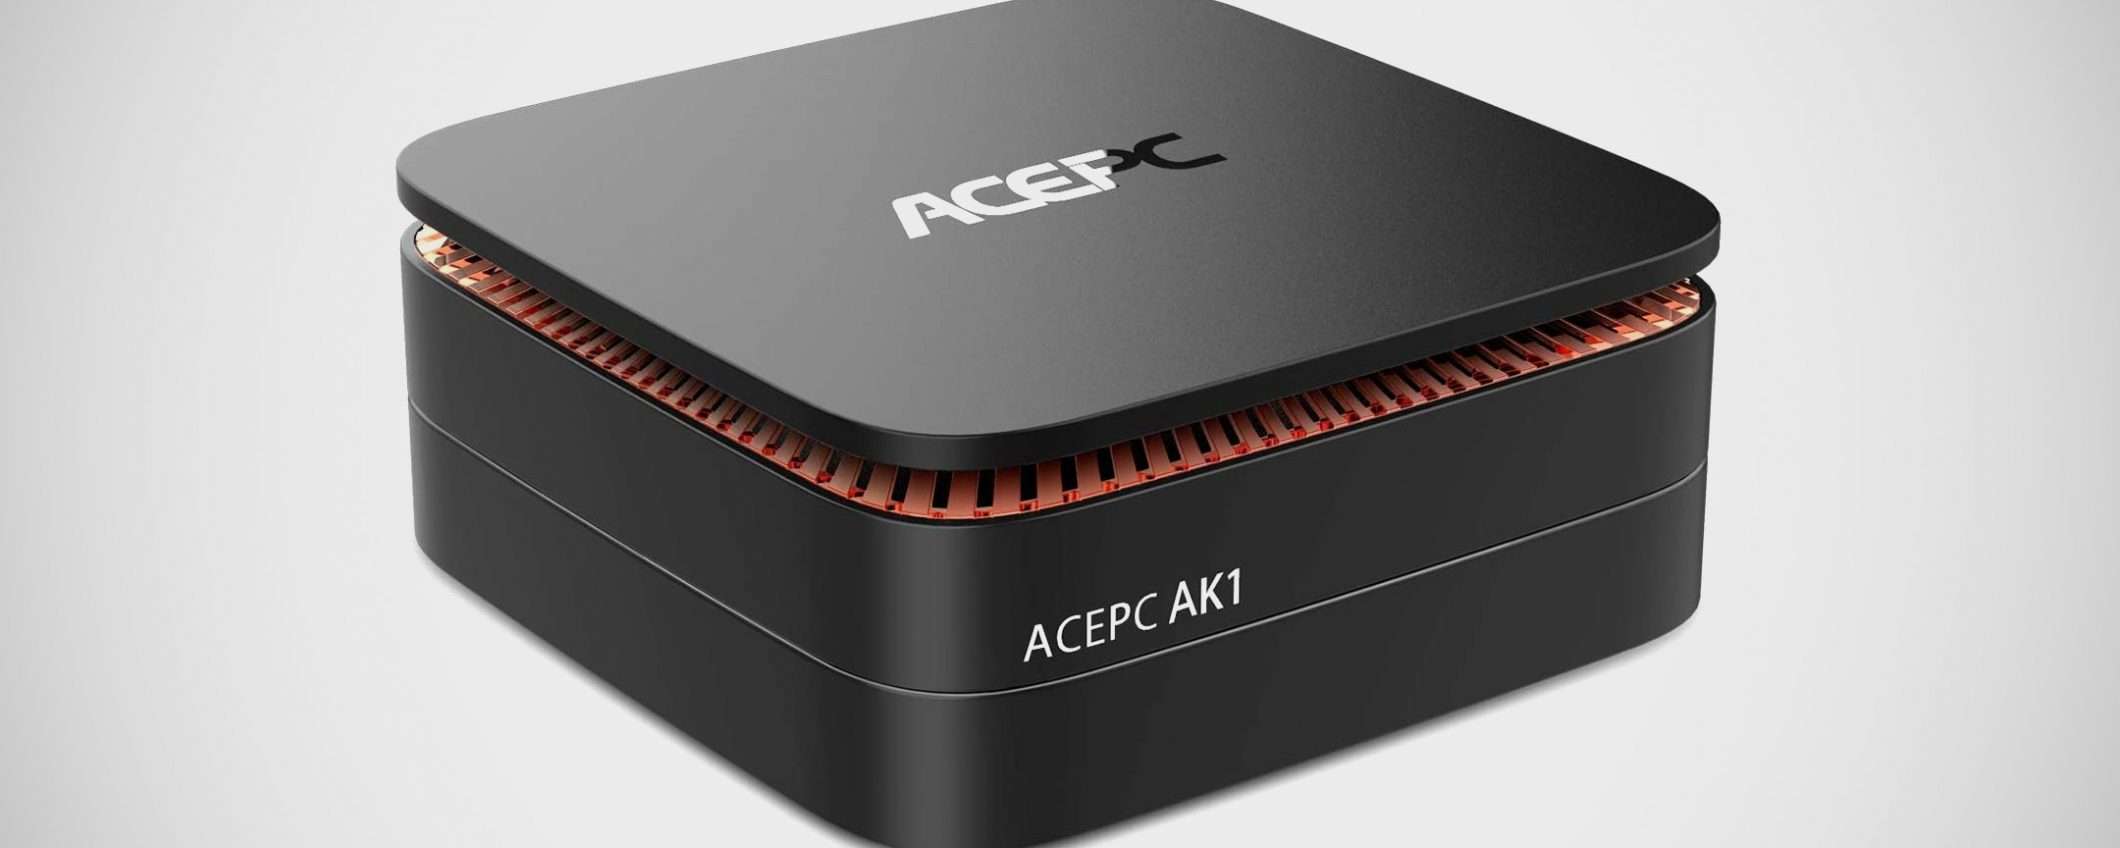 Prime Day: ACEPC AK1, offerta lampo per il Mini PC